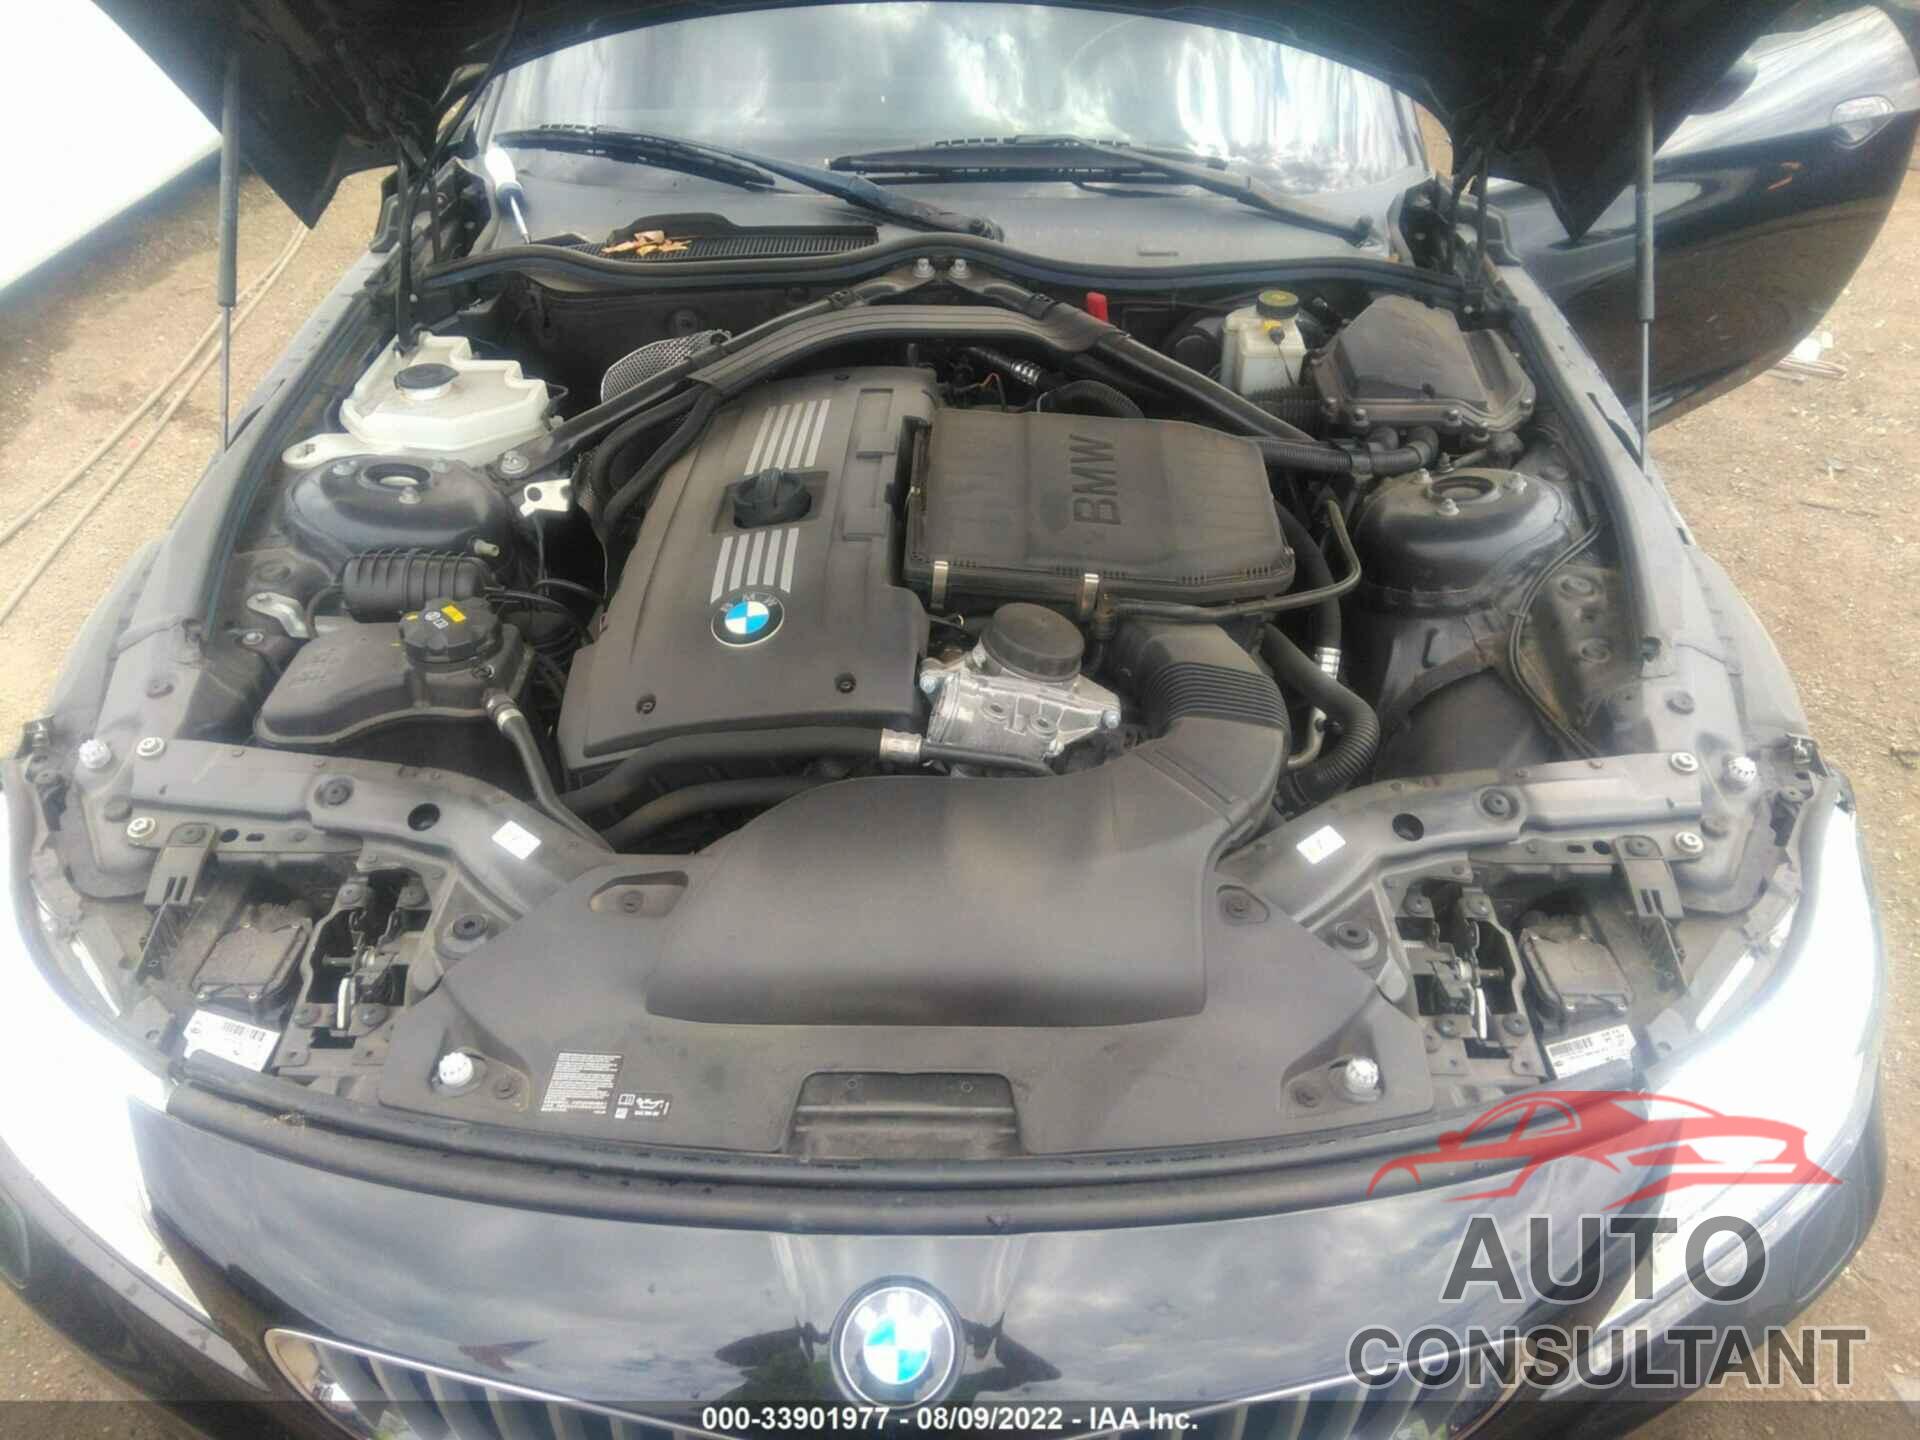 BMW Z4 2016 - WBALM7C59G5B60232